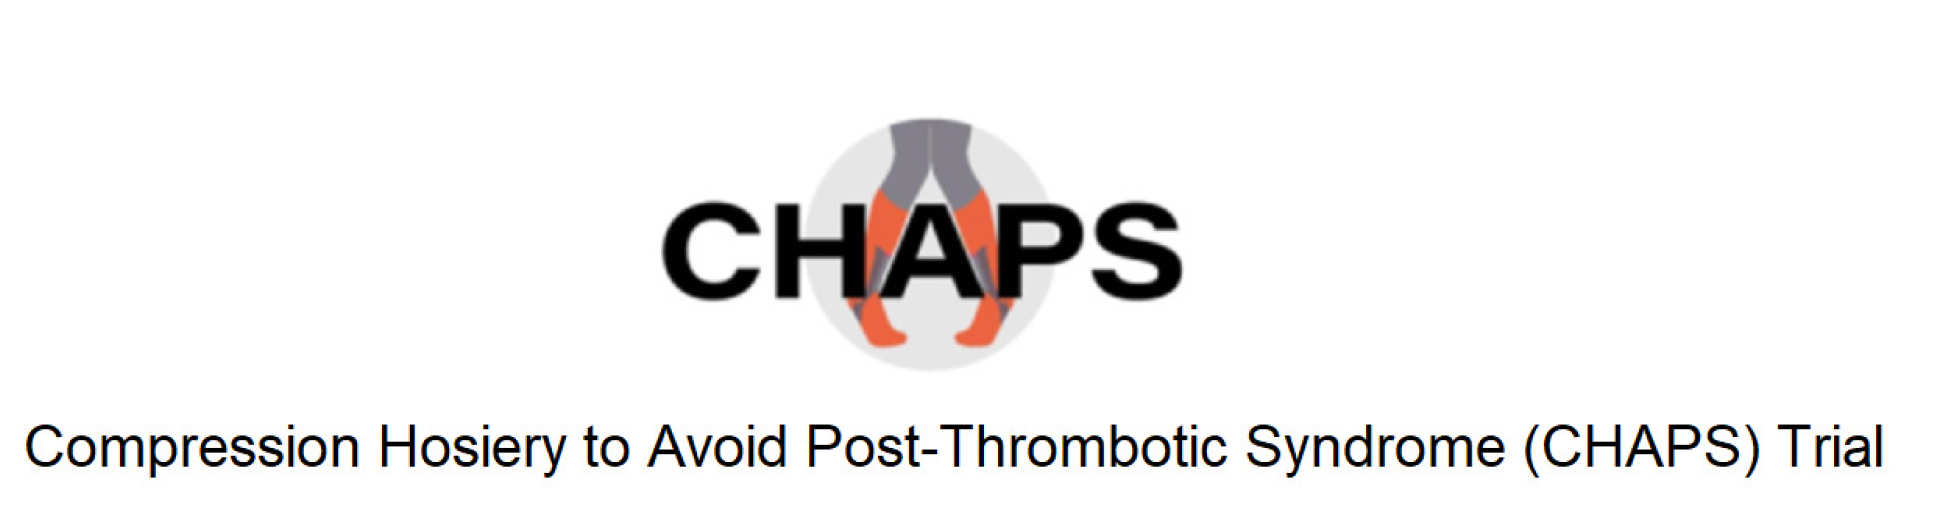 CHAPS logo